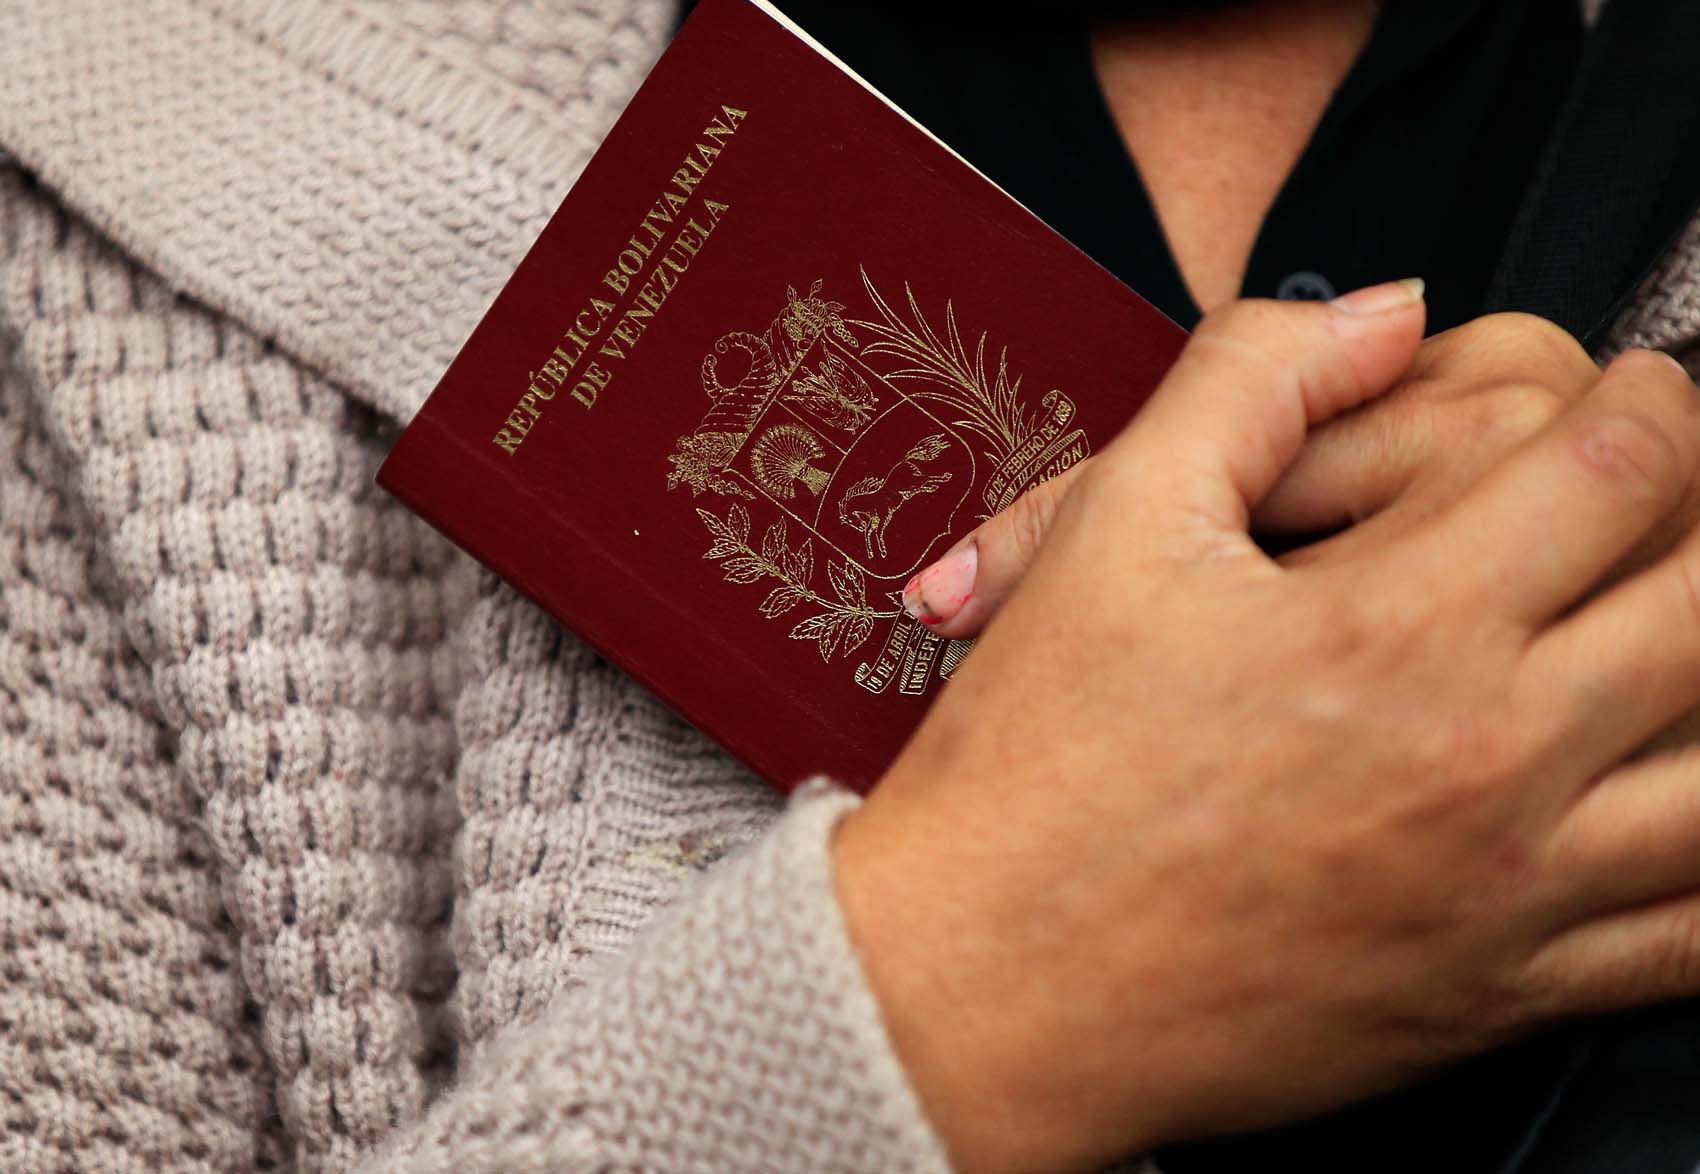 Orlando Viera Blanco: Canadá ofrece permanencia temporal a venezolanos con pasaportes vencidos